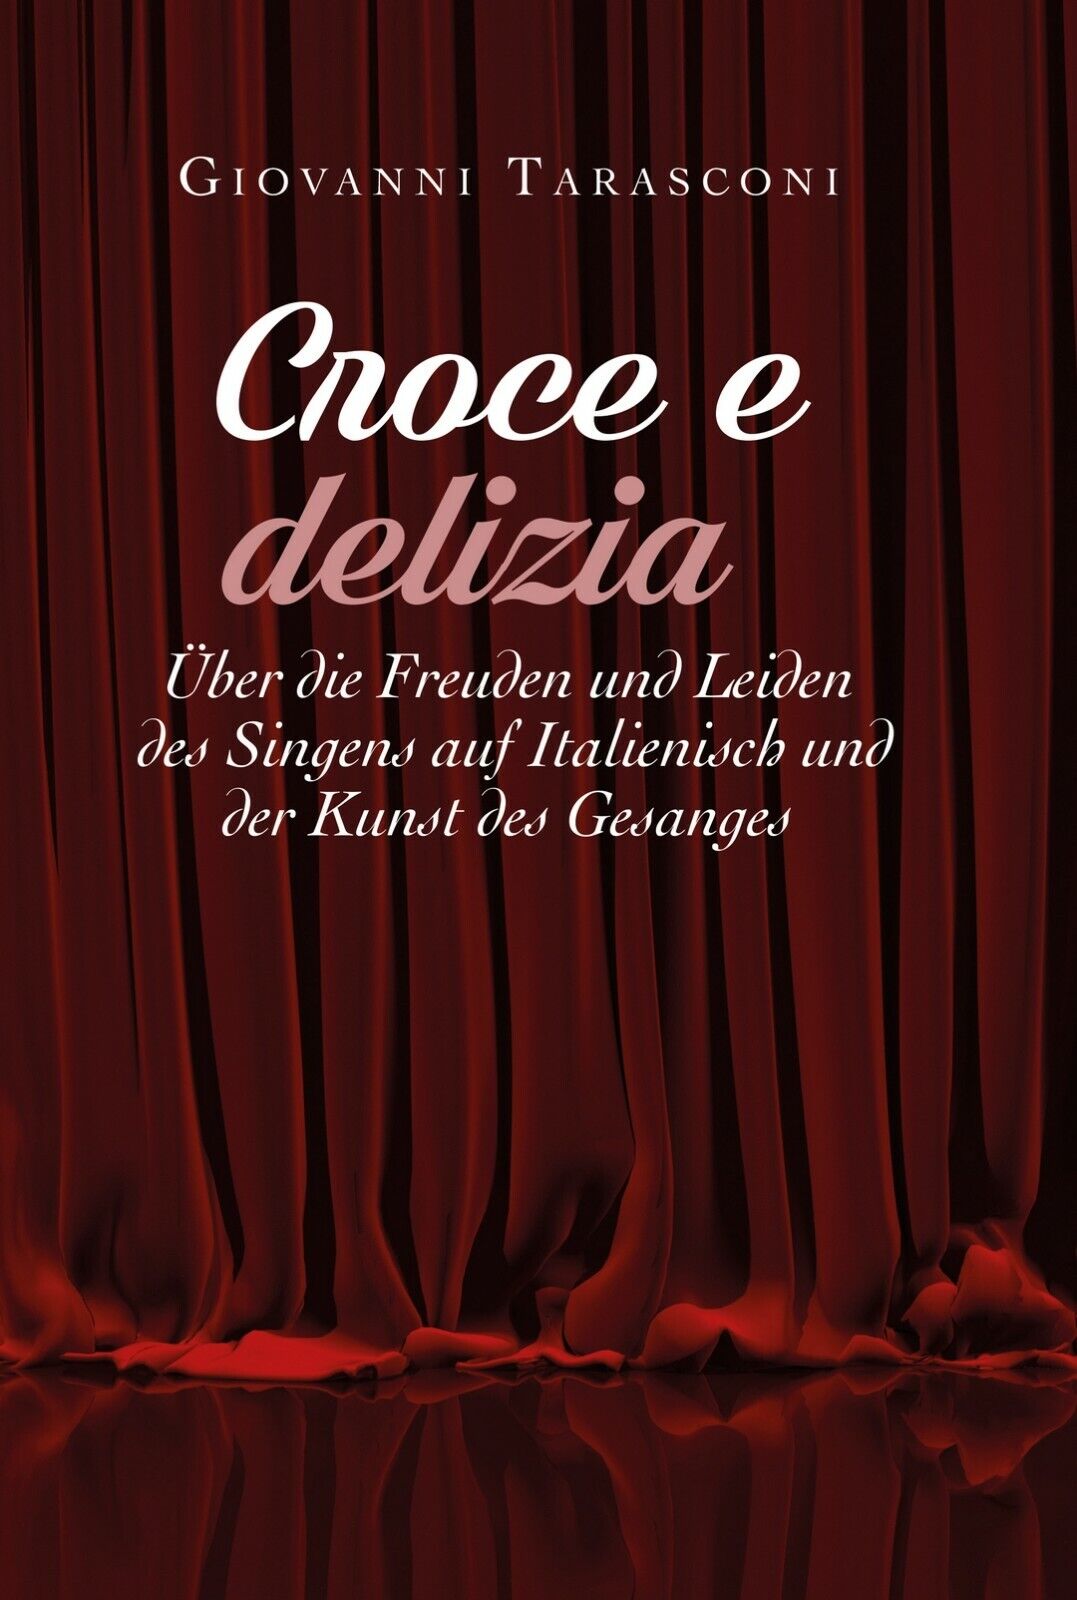 CROCE E DELIZIA: ?ber die Freude und Leiden des Singens auf Italienisch und... libro usato